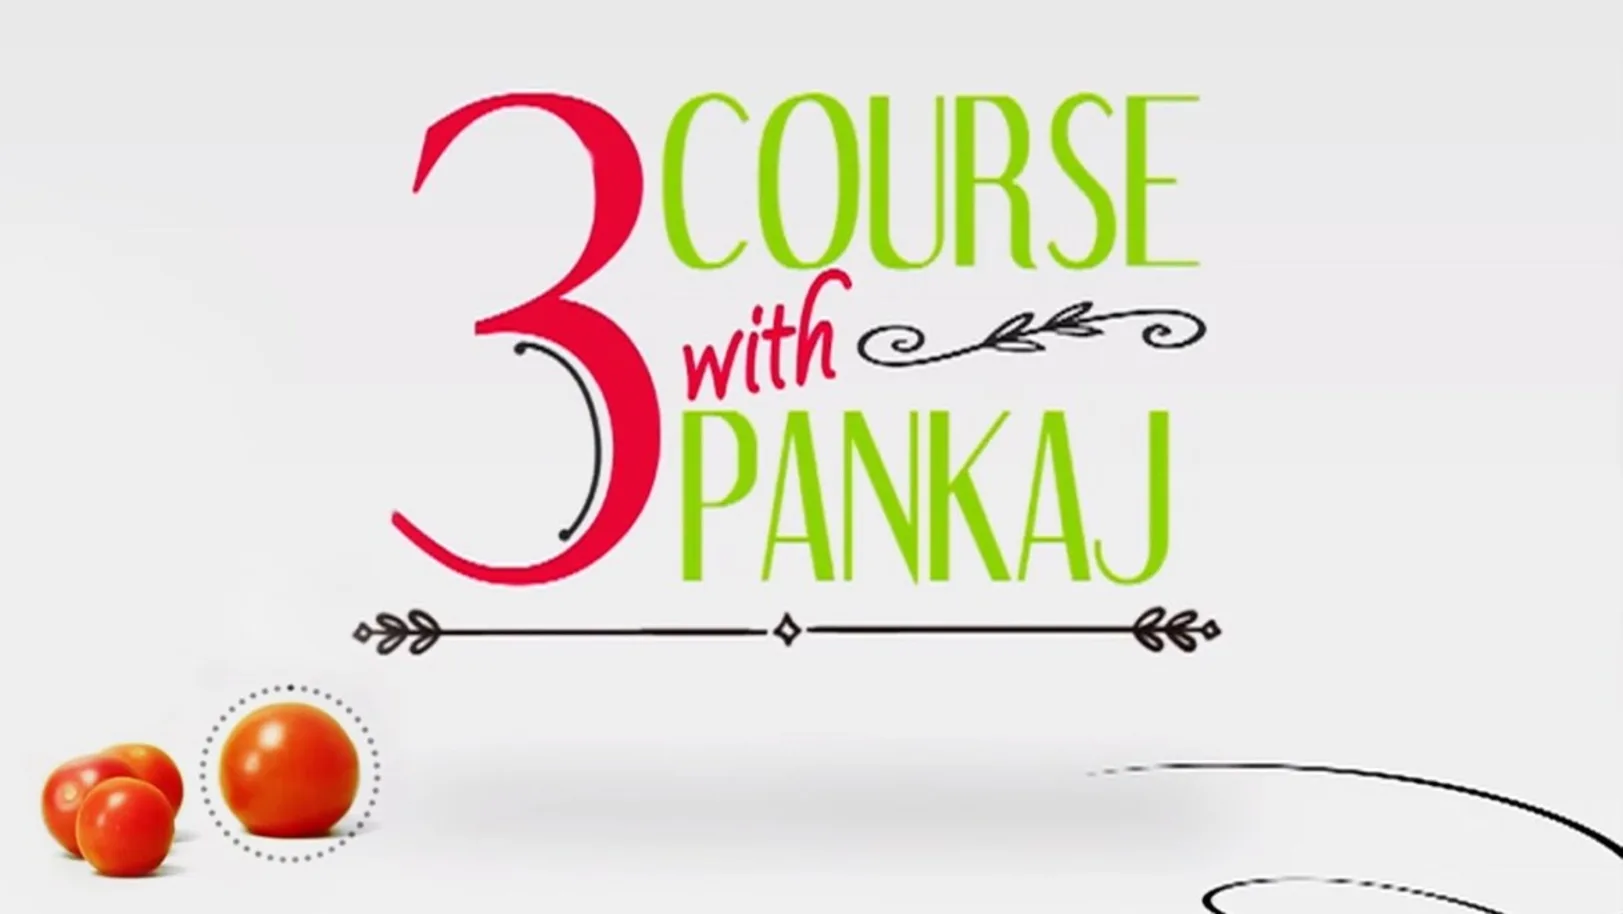 3 Course With Pankaj Streaming Now On Zee Zest HD